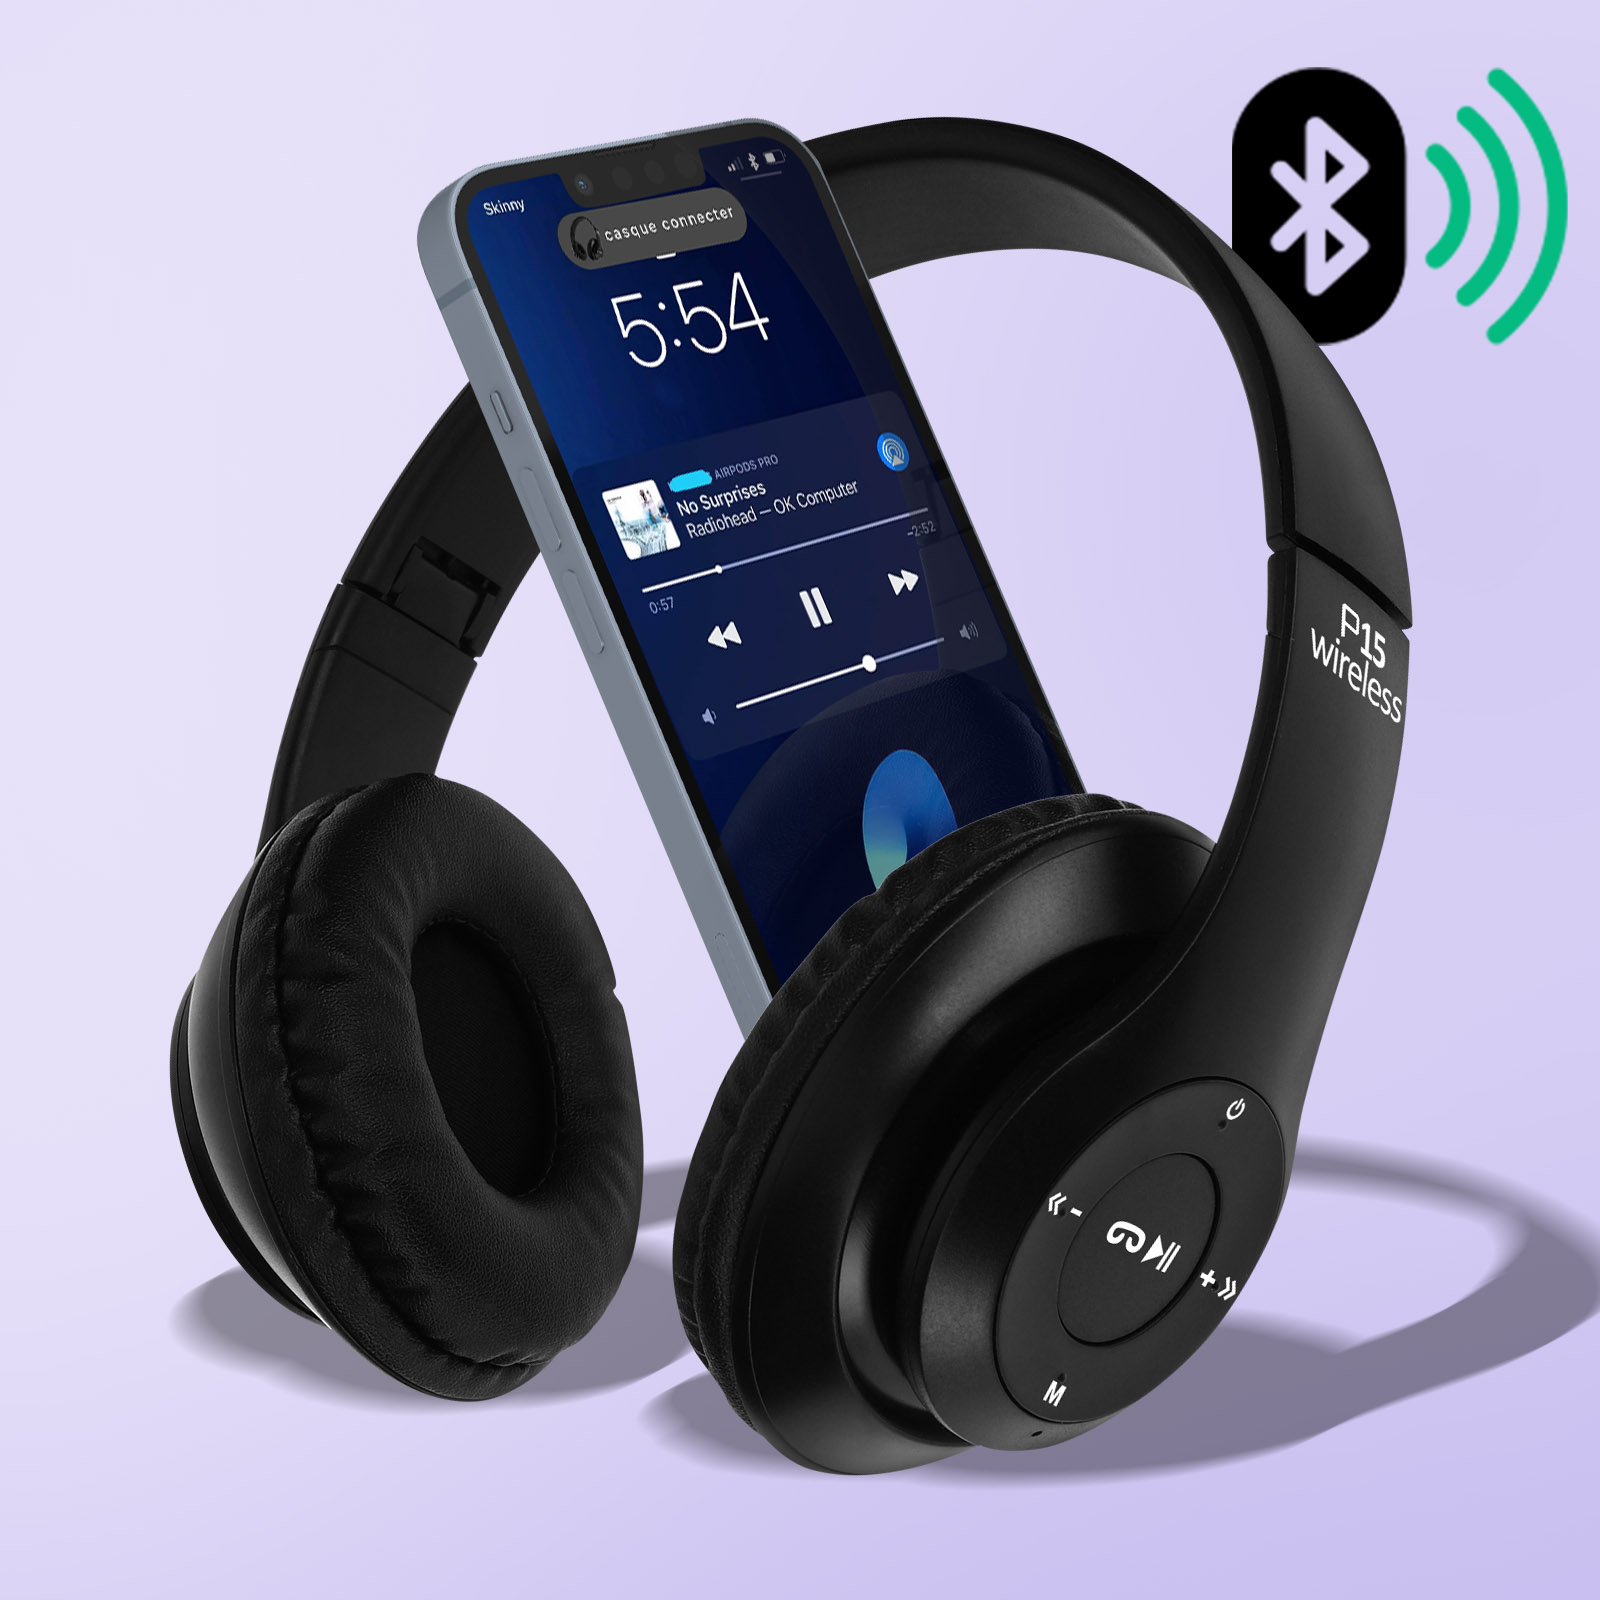 Escape - Écouteurs Filaire Stéréo avec Microphone Intégré, Bleu